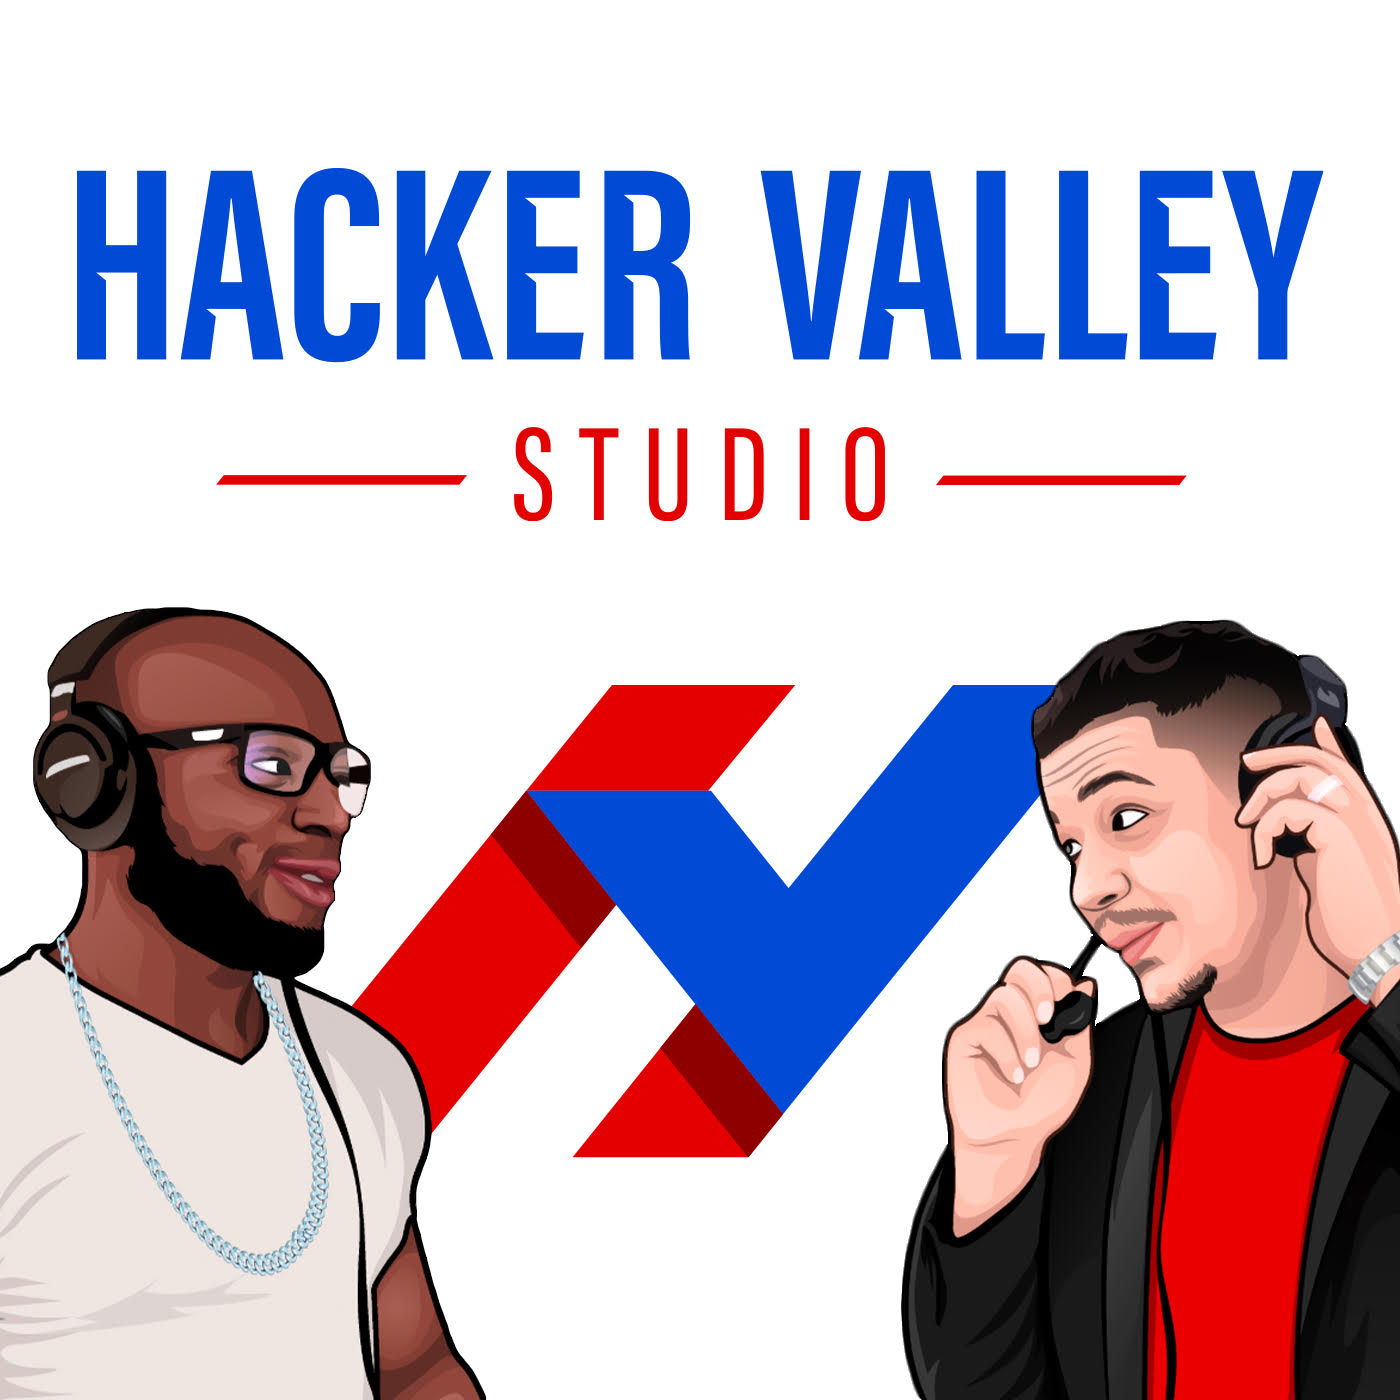 Hacker Valley Studio